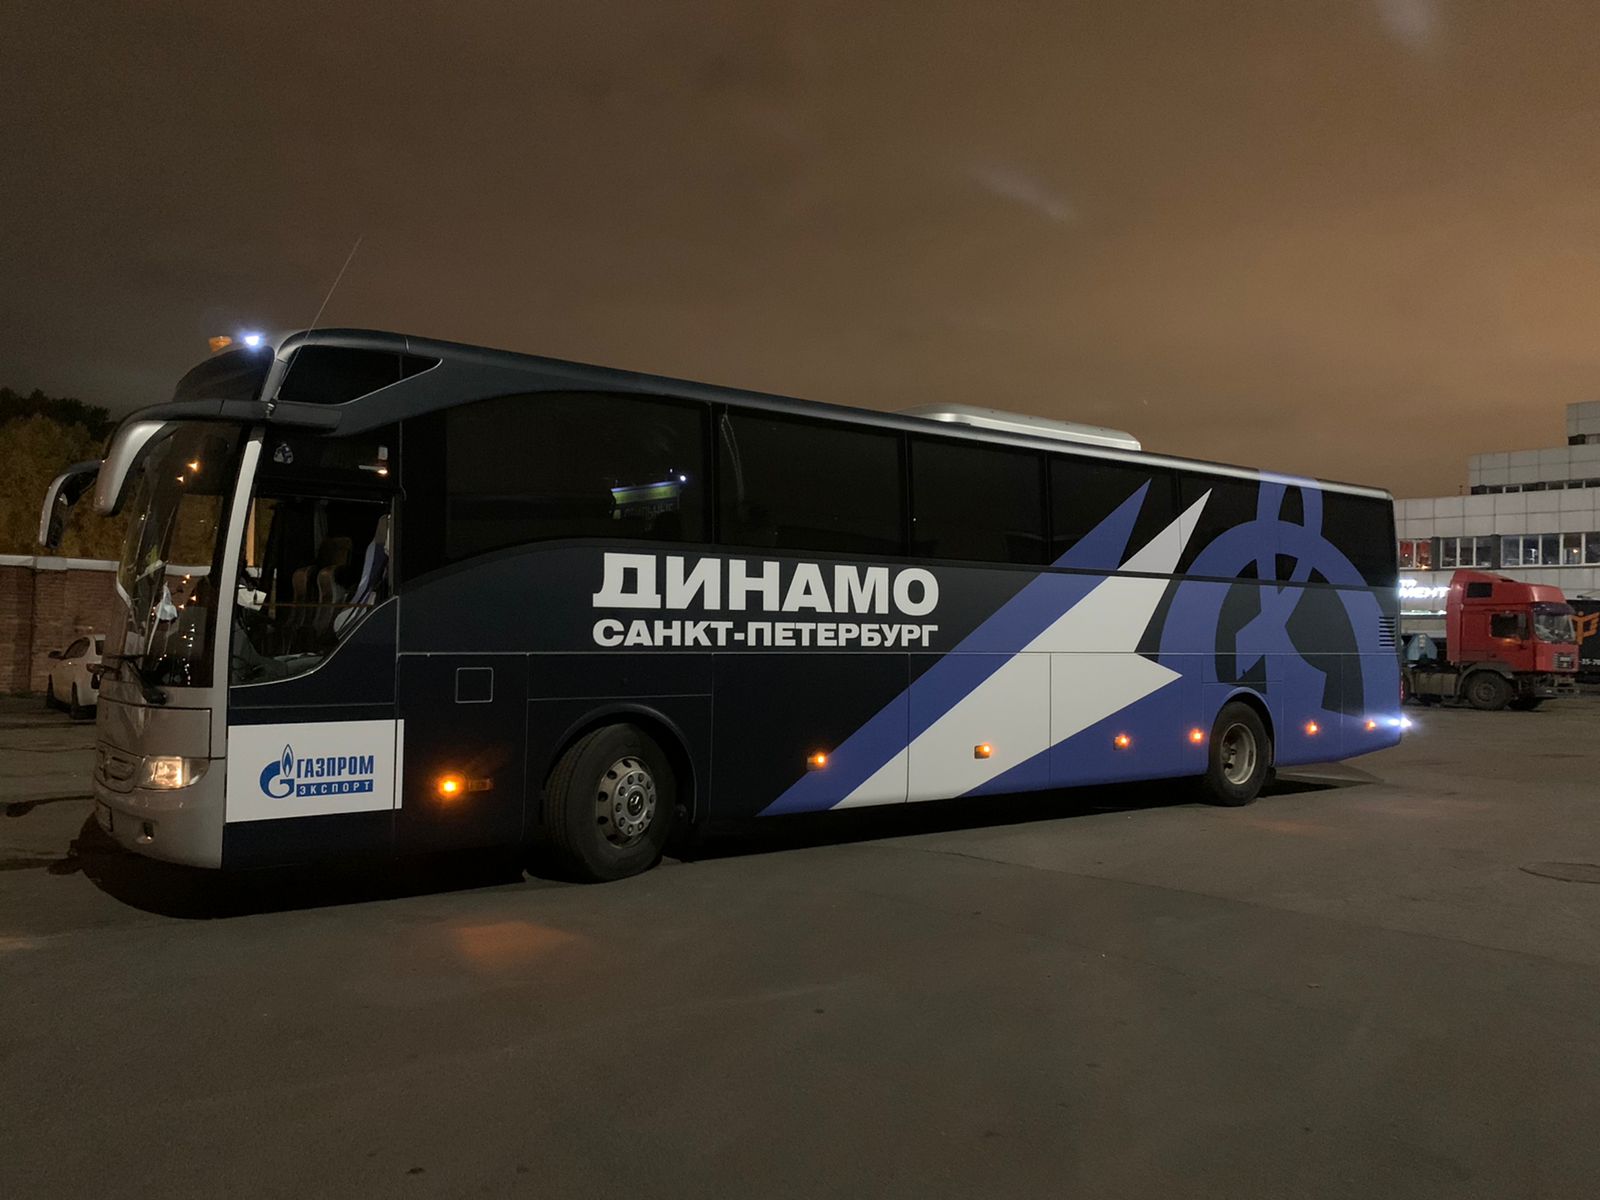 Бренидрование автобуса Динамо